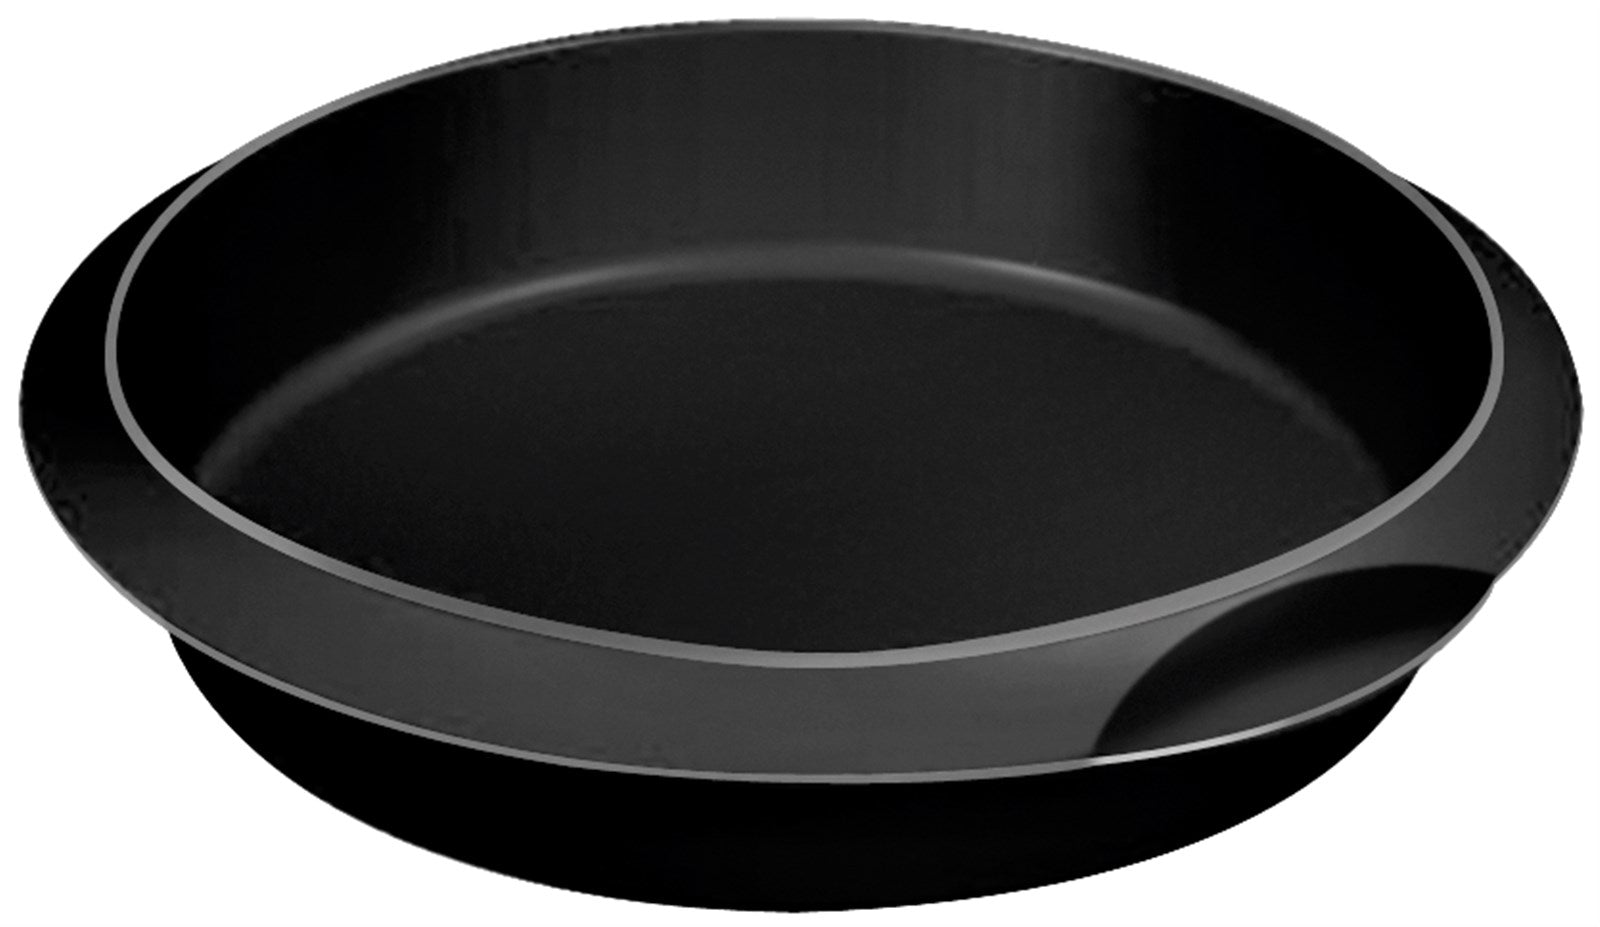 Backform Cake rund schwarz, 24 cm in Schwarz präsentiert im Onlineshop von KAQTU Design AG. Backen ist von Lékué